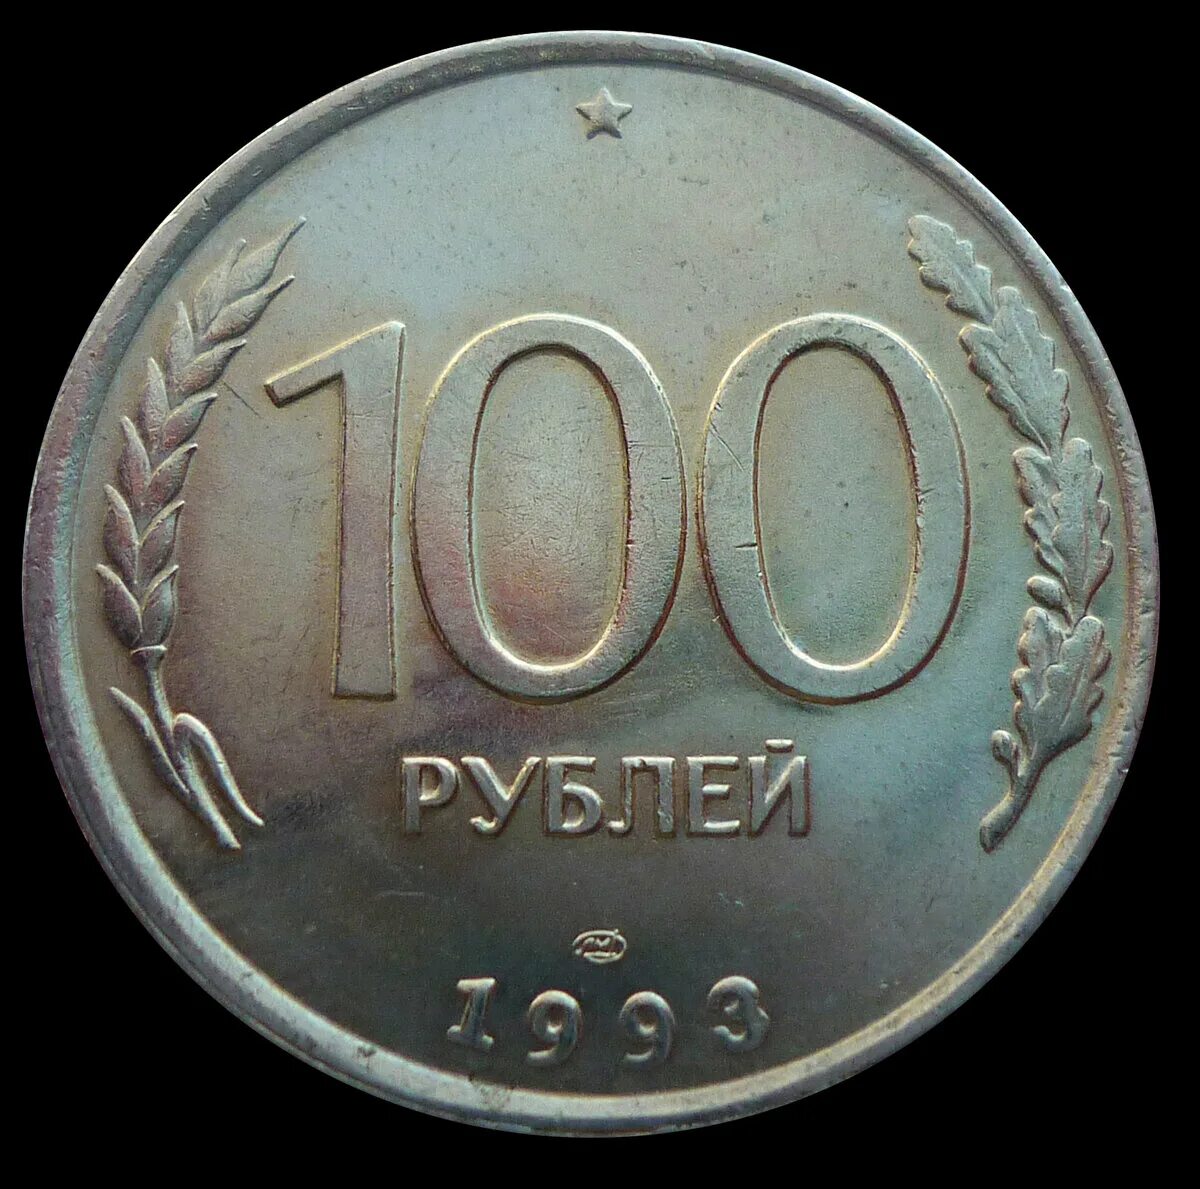 Продам за 1000000 рублей. 100 Рублей 1993 года. Монеты 1993 года. 100 Руб СССР монета. Рубли 1993.